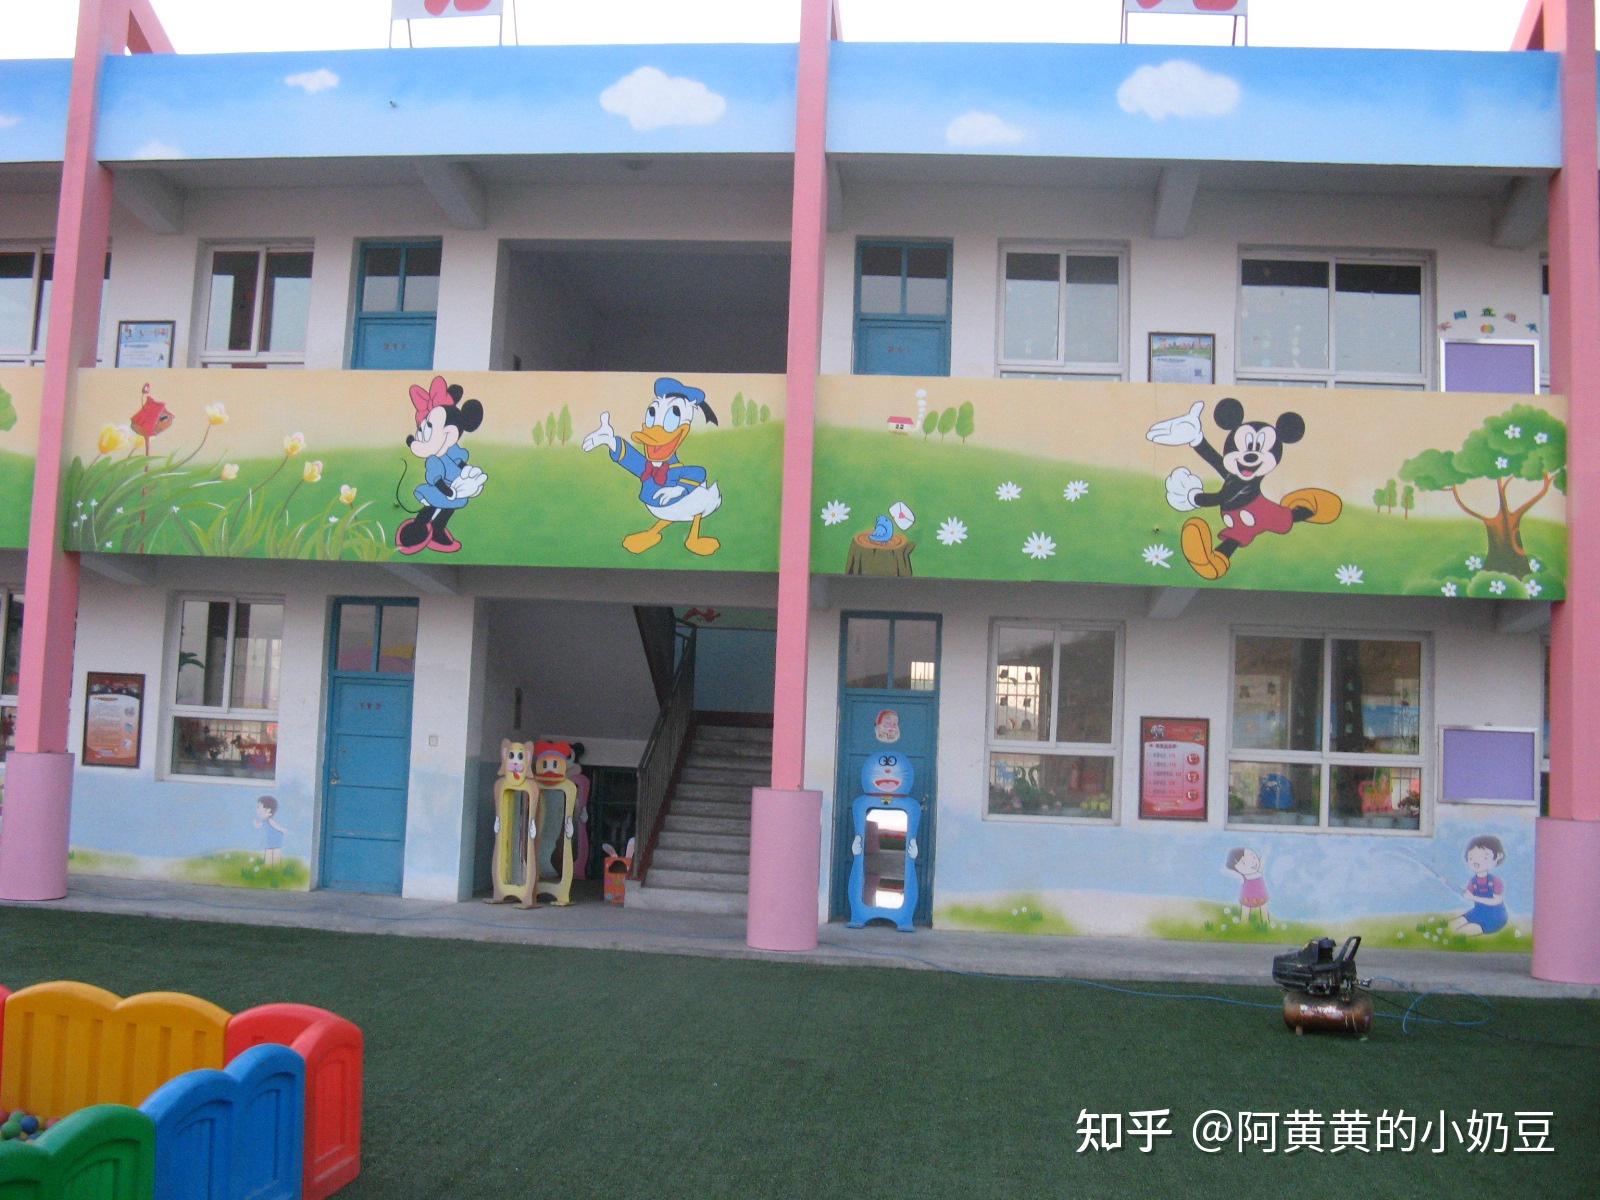 郑州专业幼儿园墙体彩绘设计创作工作室